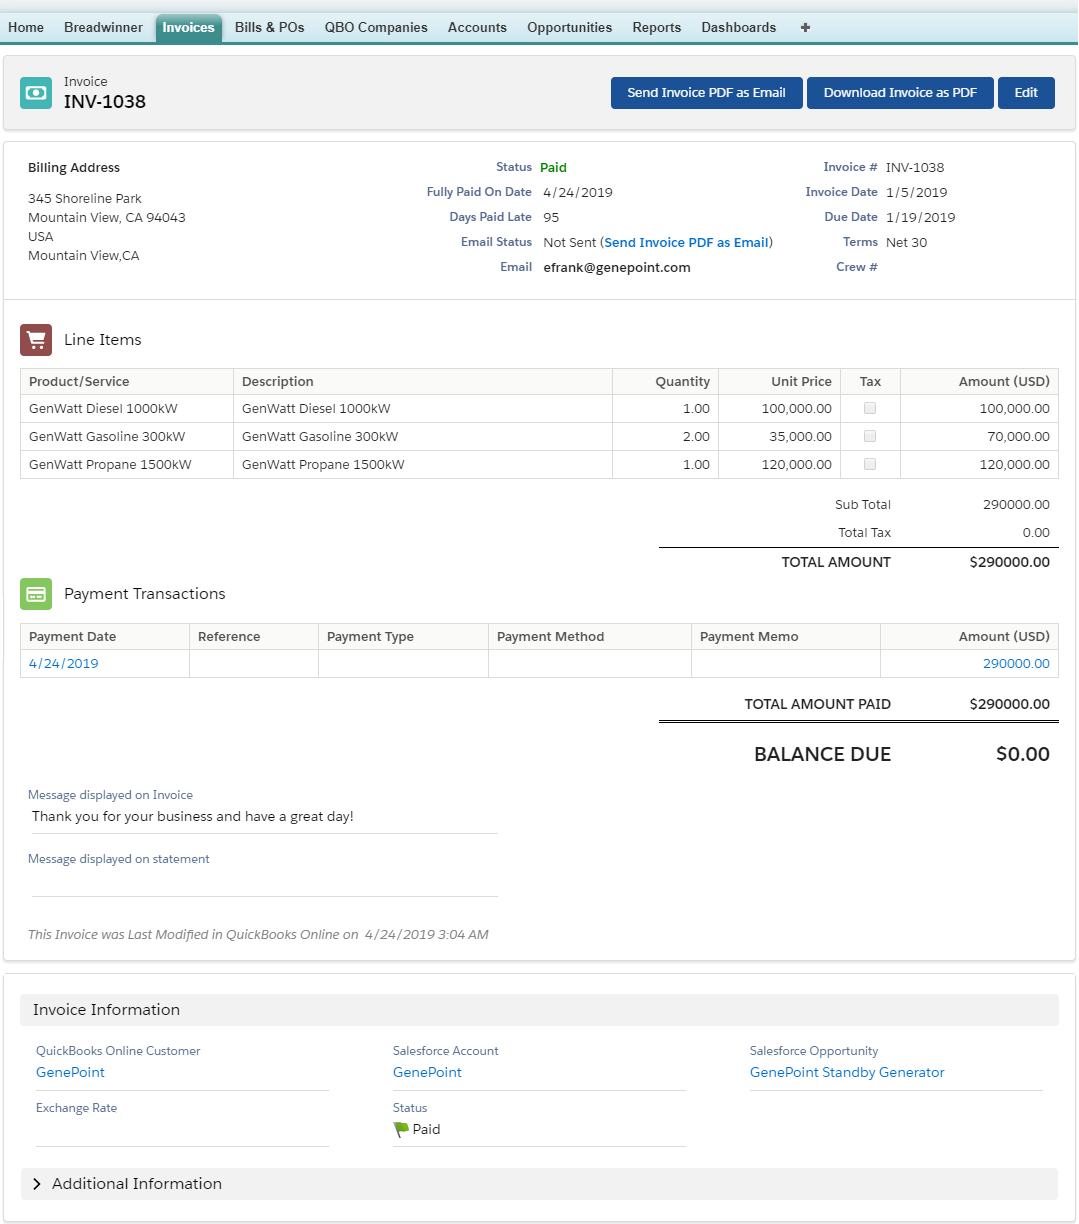 Breadwinner QuickBooks Online Salesforce Invoice Information